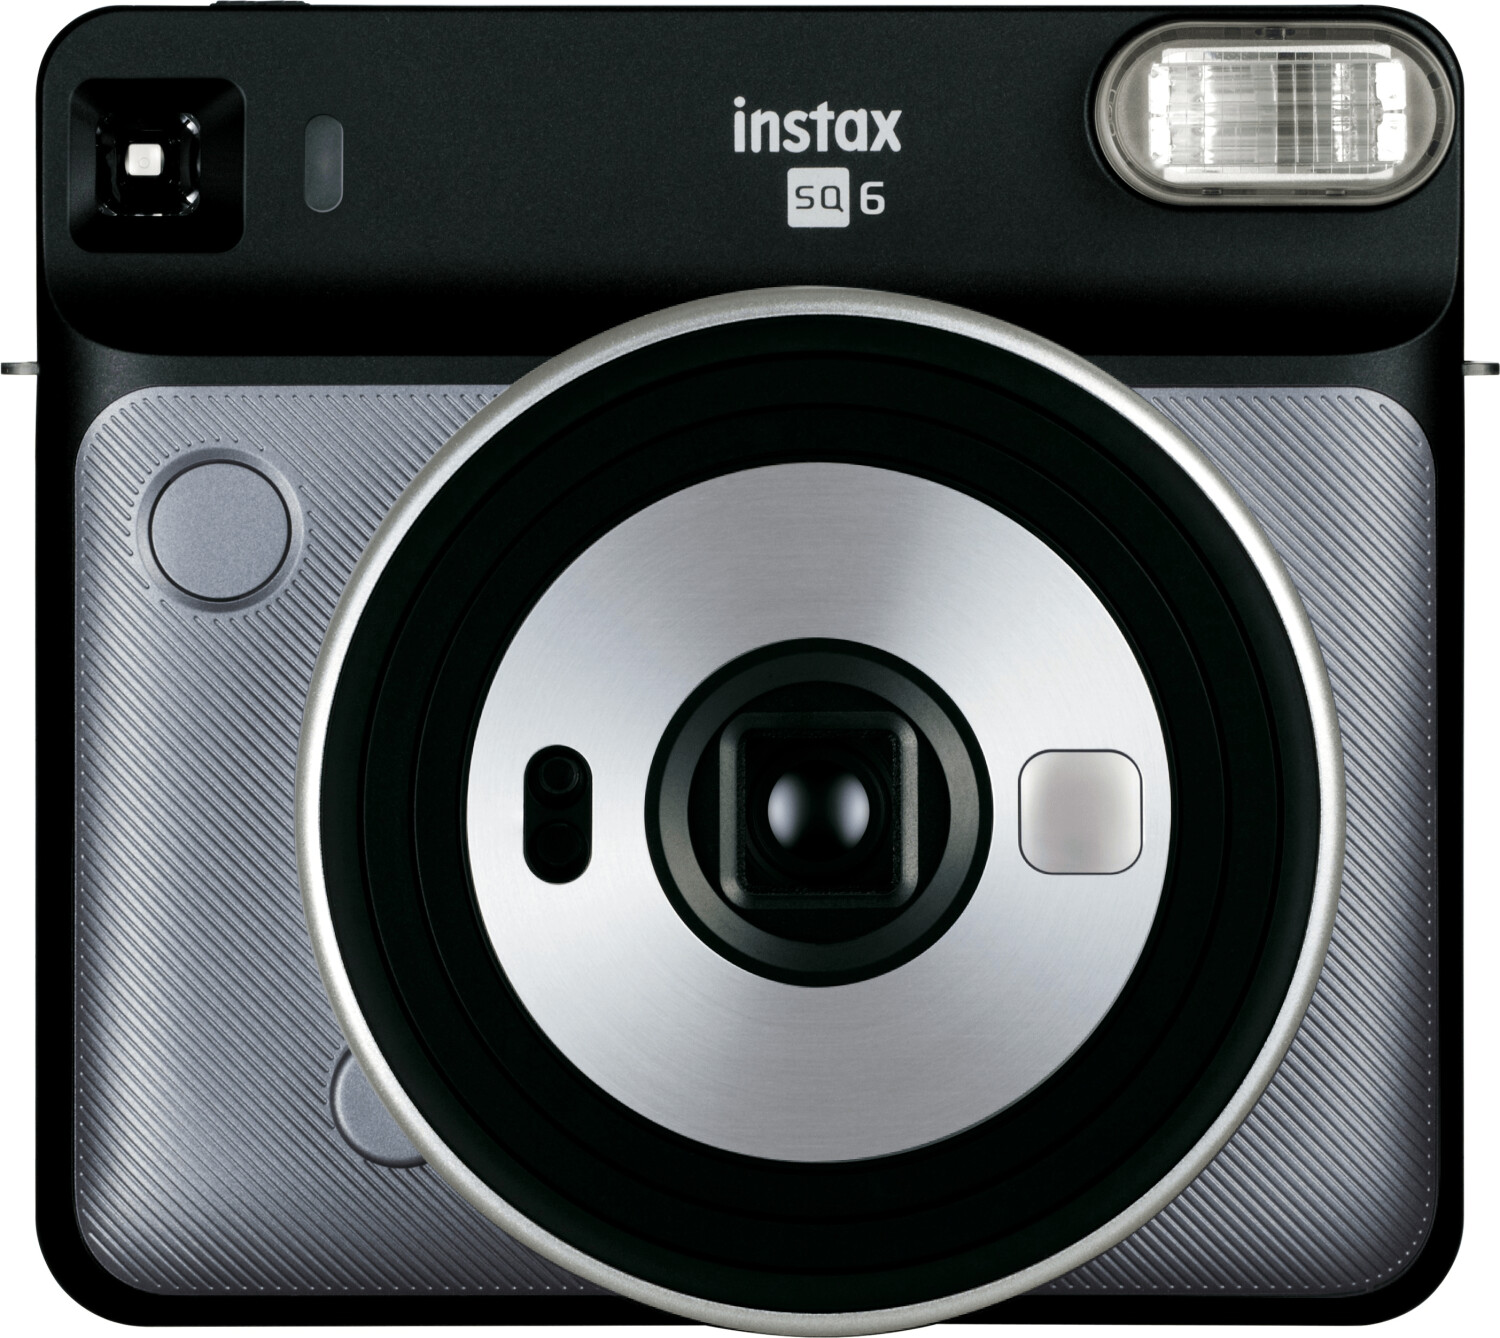 INSTAX Pal - appareil photo INSTAX qui tient dans la main